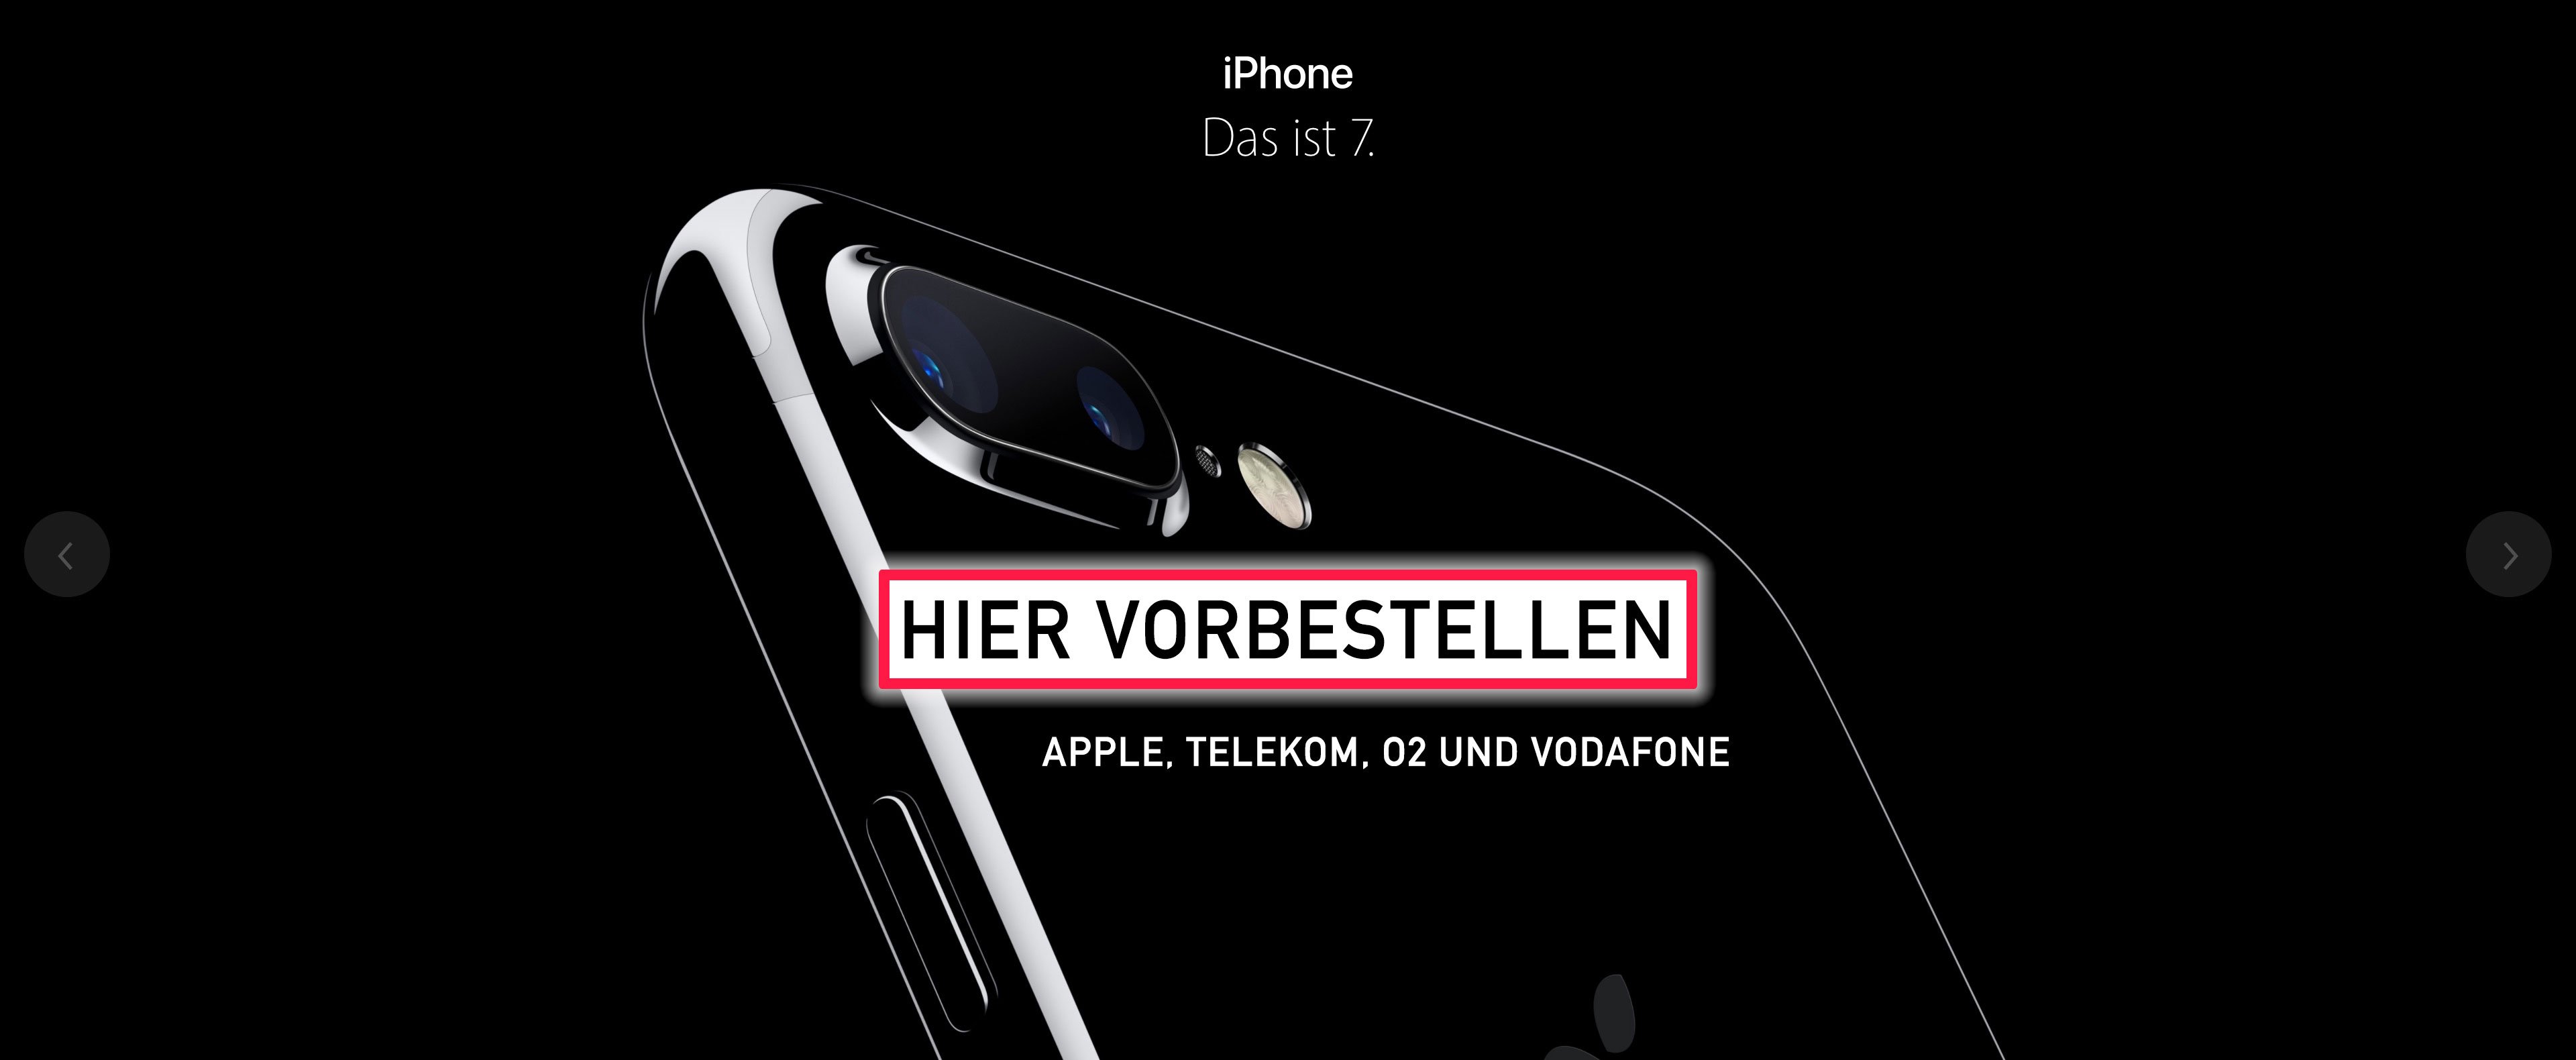 Apple iPhone 7: Reservierung und Abholung am 17. September möglich 5